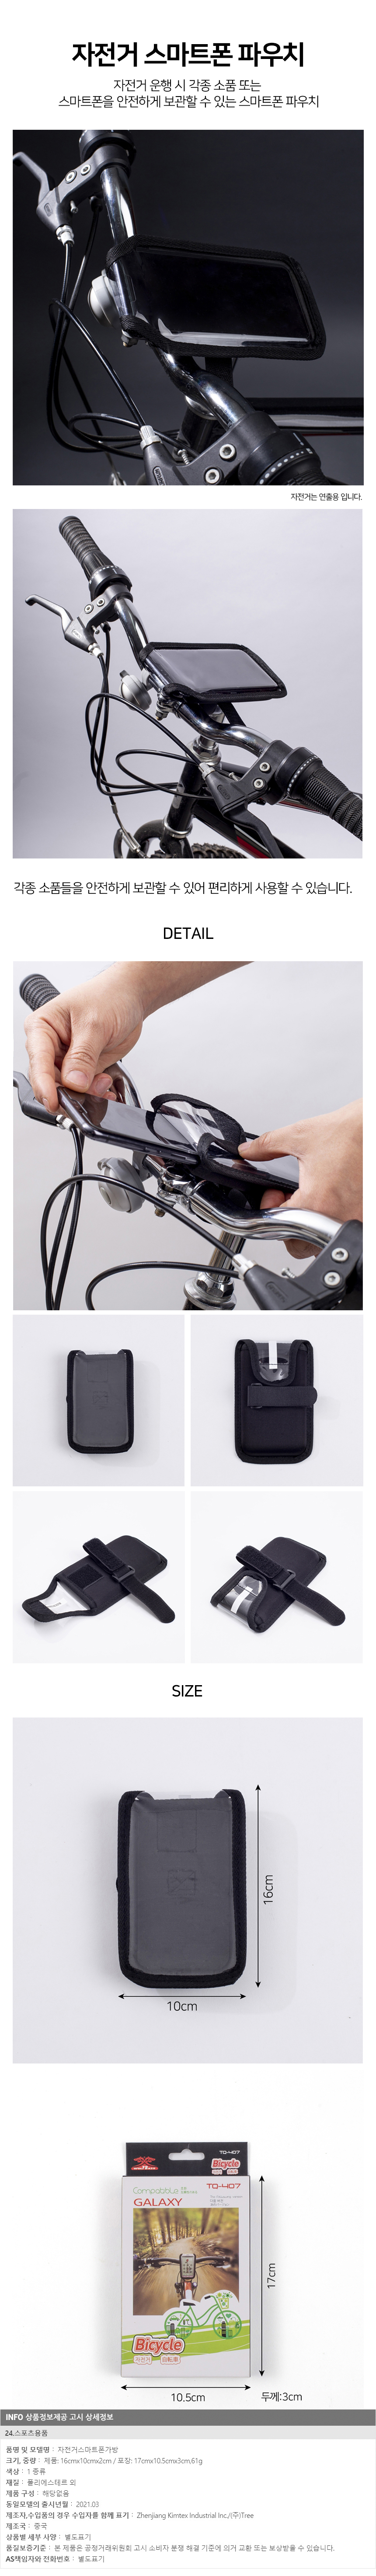 컴팩트 자전거 스마트폰 파우치